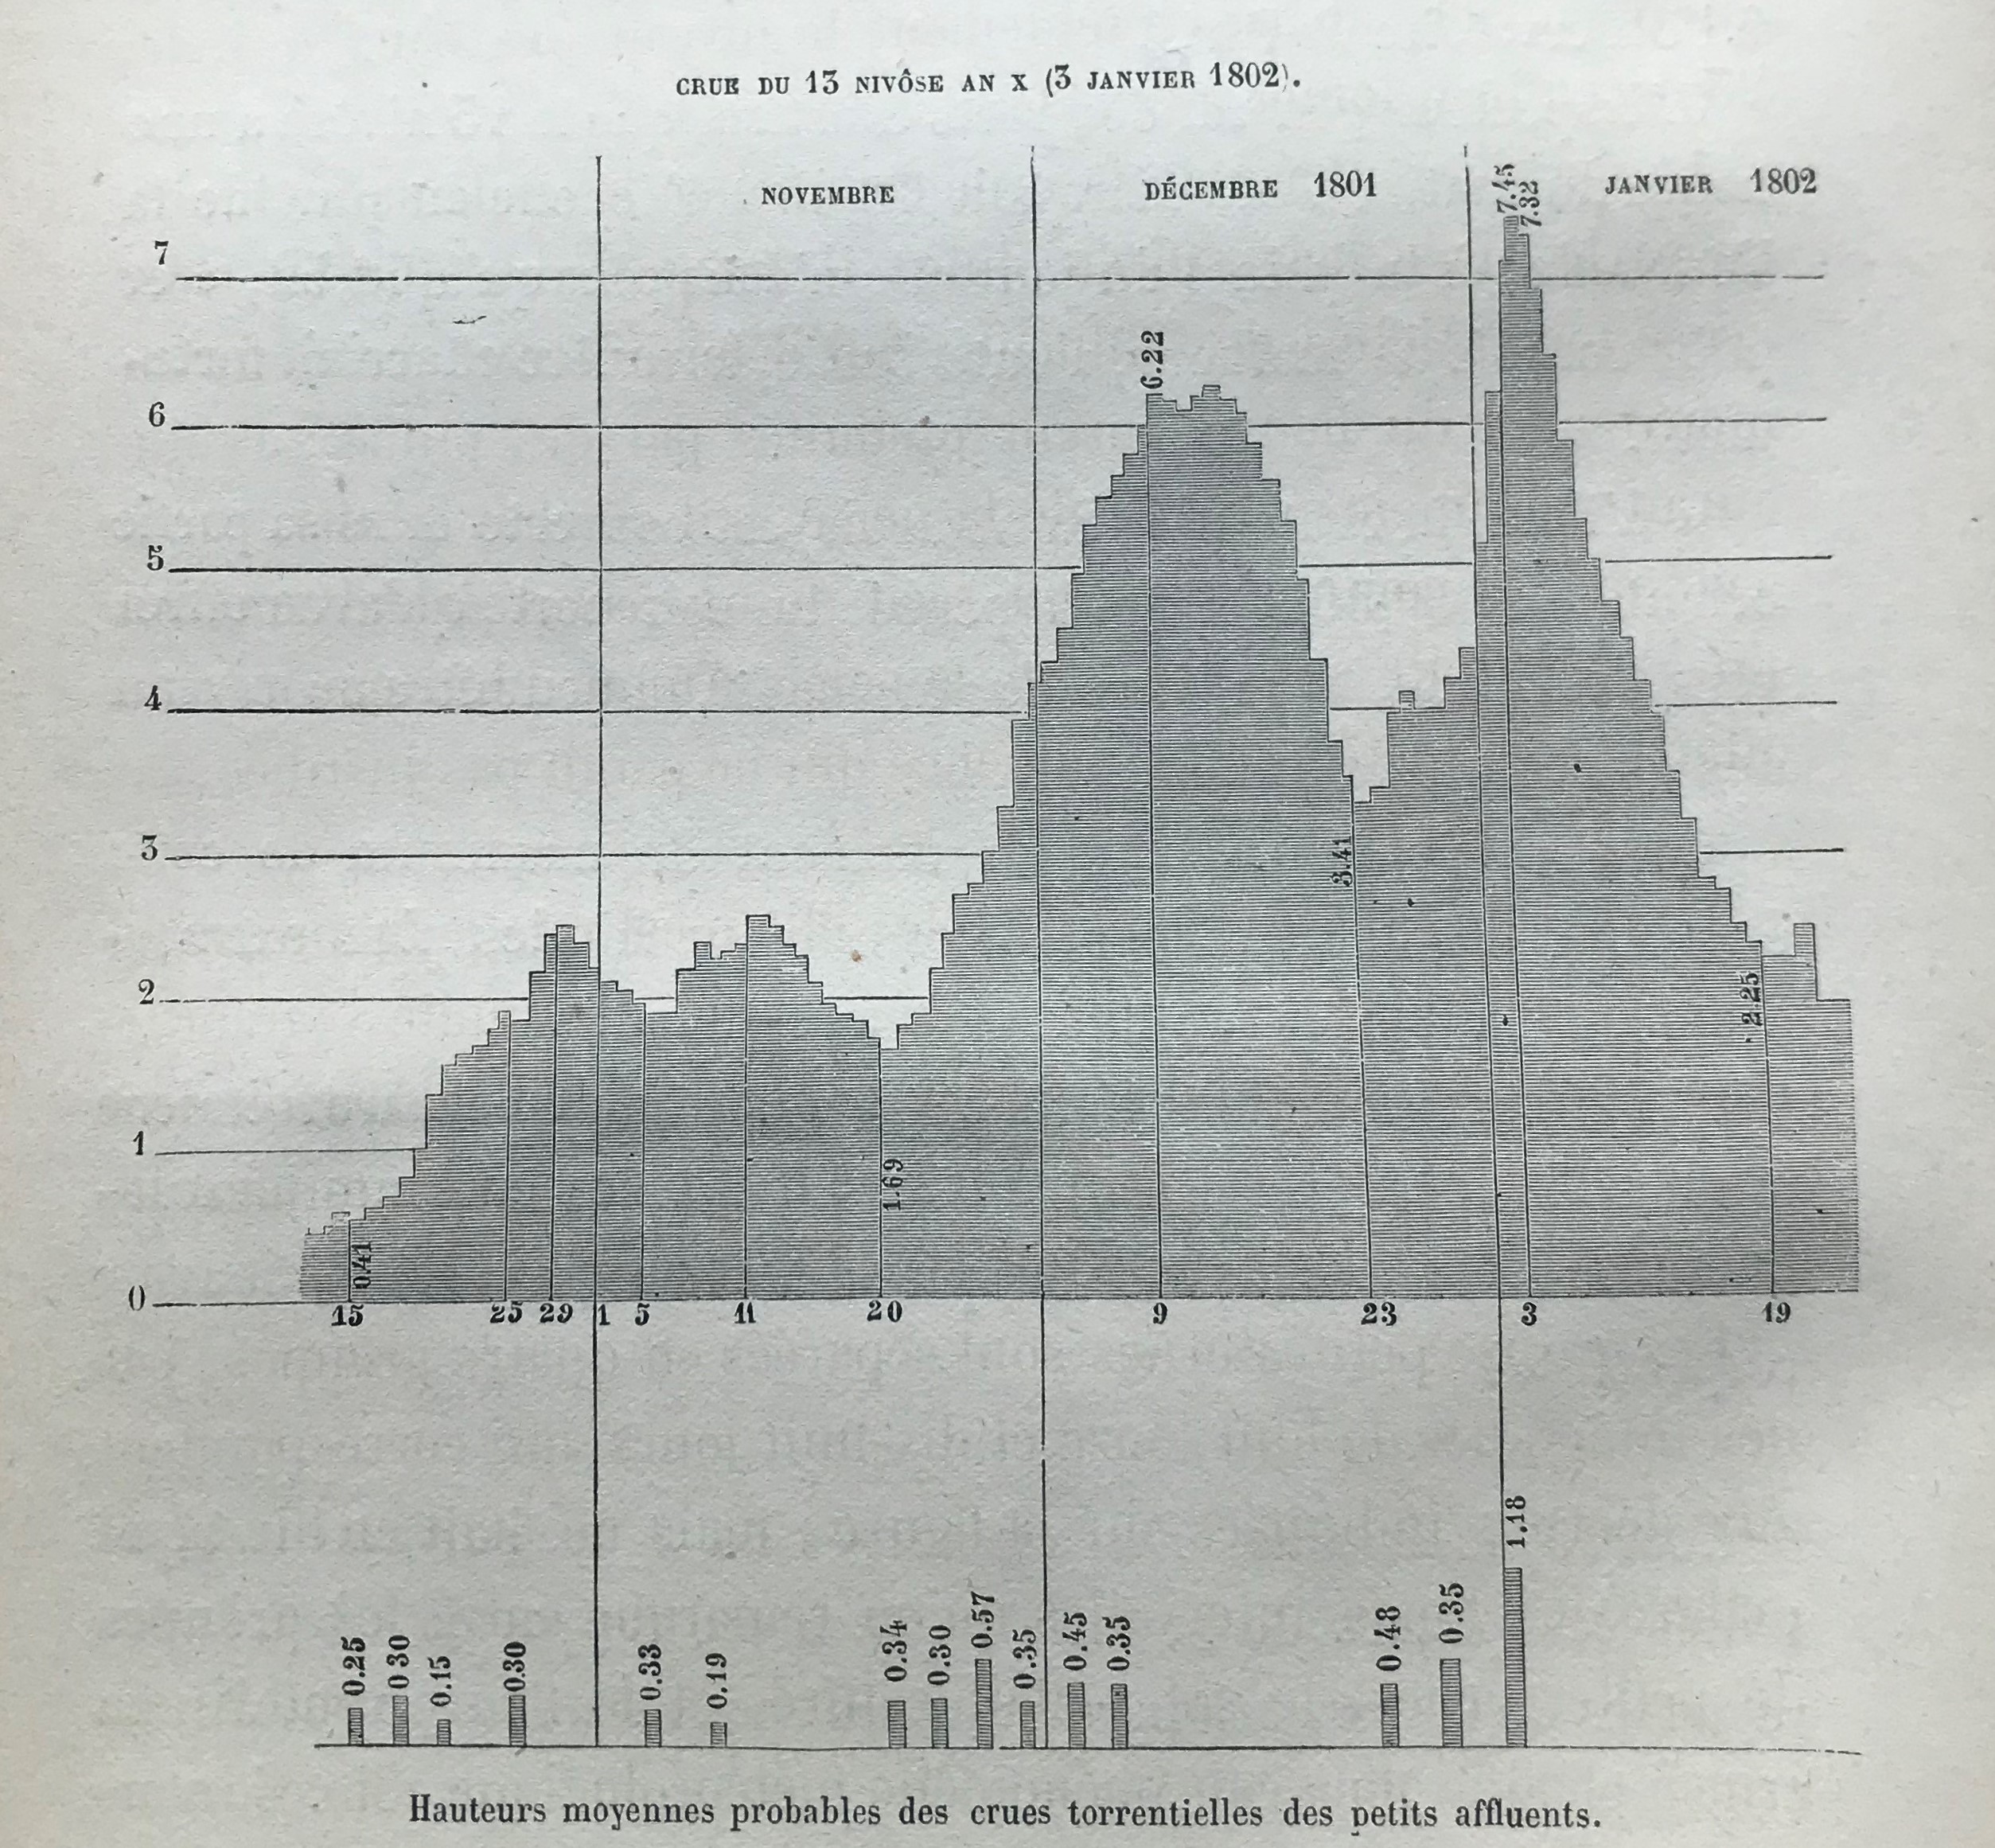 Crue du 13 nivose an X (3 janvier 1802) - hauteurs moyennes des crues torrentielles des petits affluents.